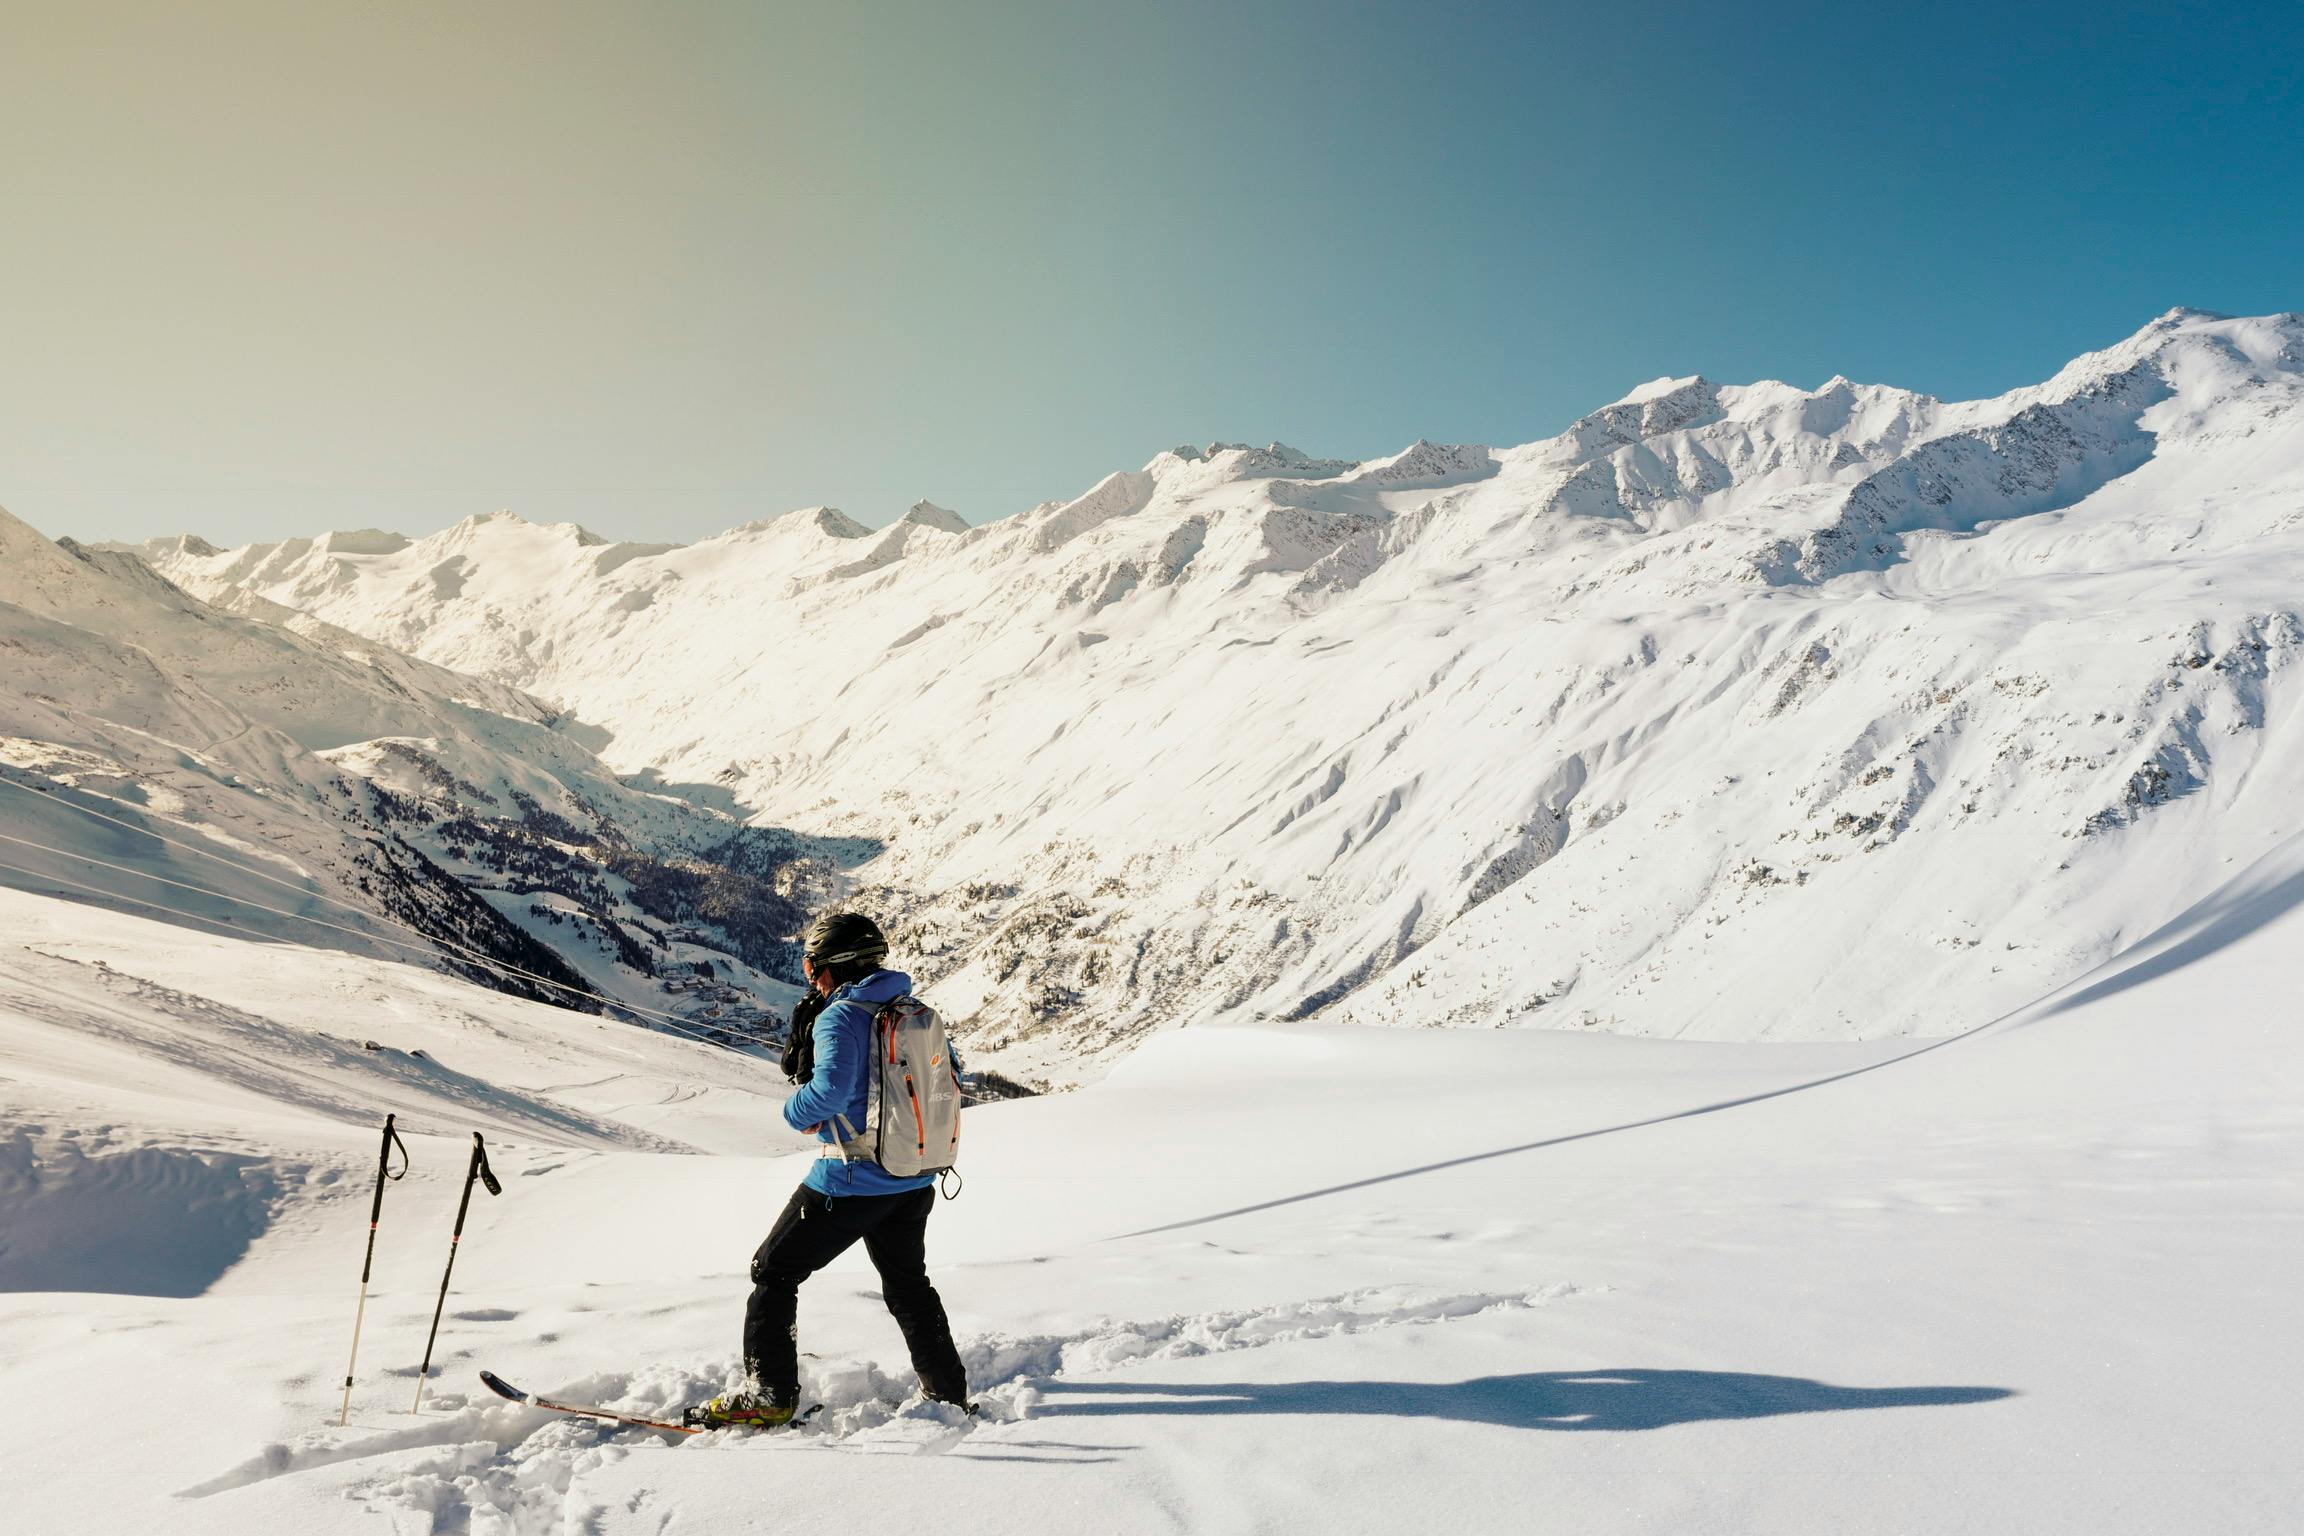 Un skieur en tenue bleue et noire, portant un sac à dos, se tenant sur une piste enneigée avec des montagnes majestueuses en arrière-plan sous un ciel bleu dégagé.